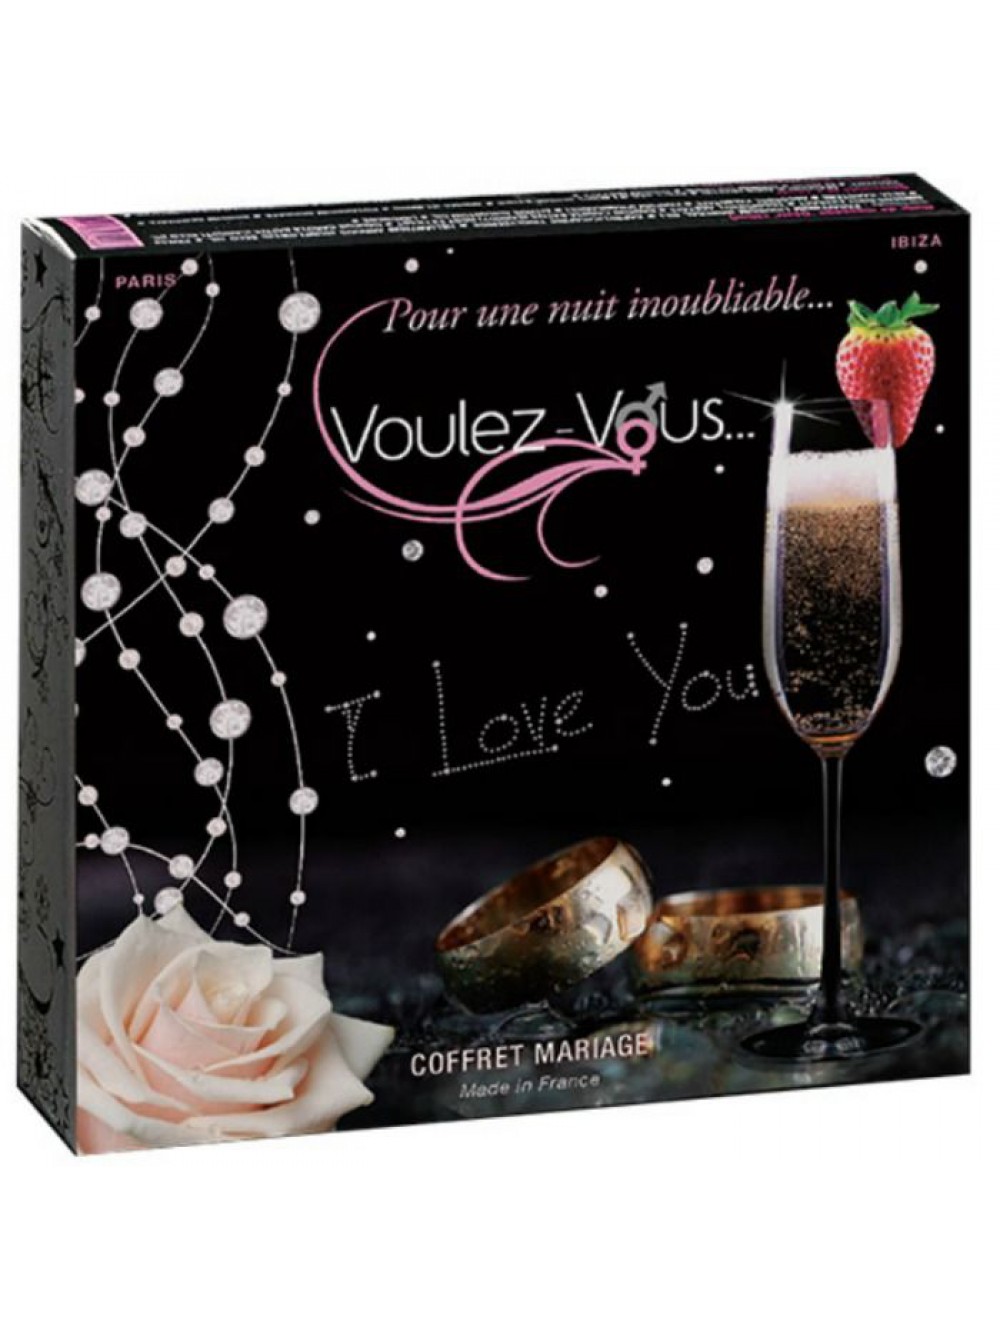 VOULEZ-VOUS WEDDING BOX 3760151303241